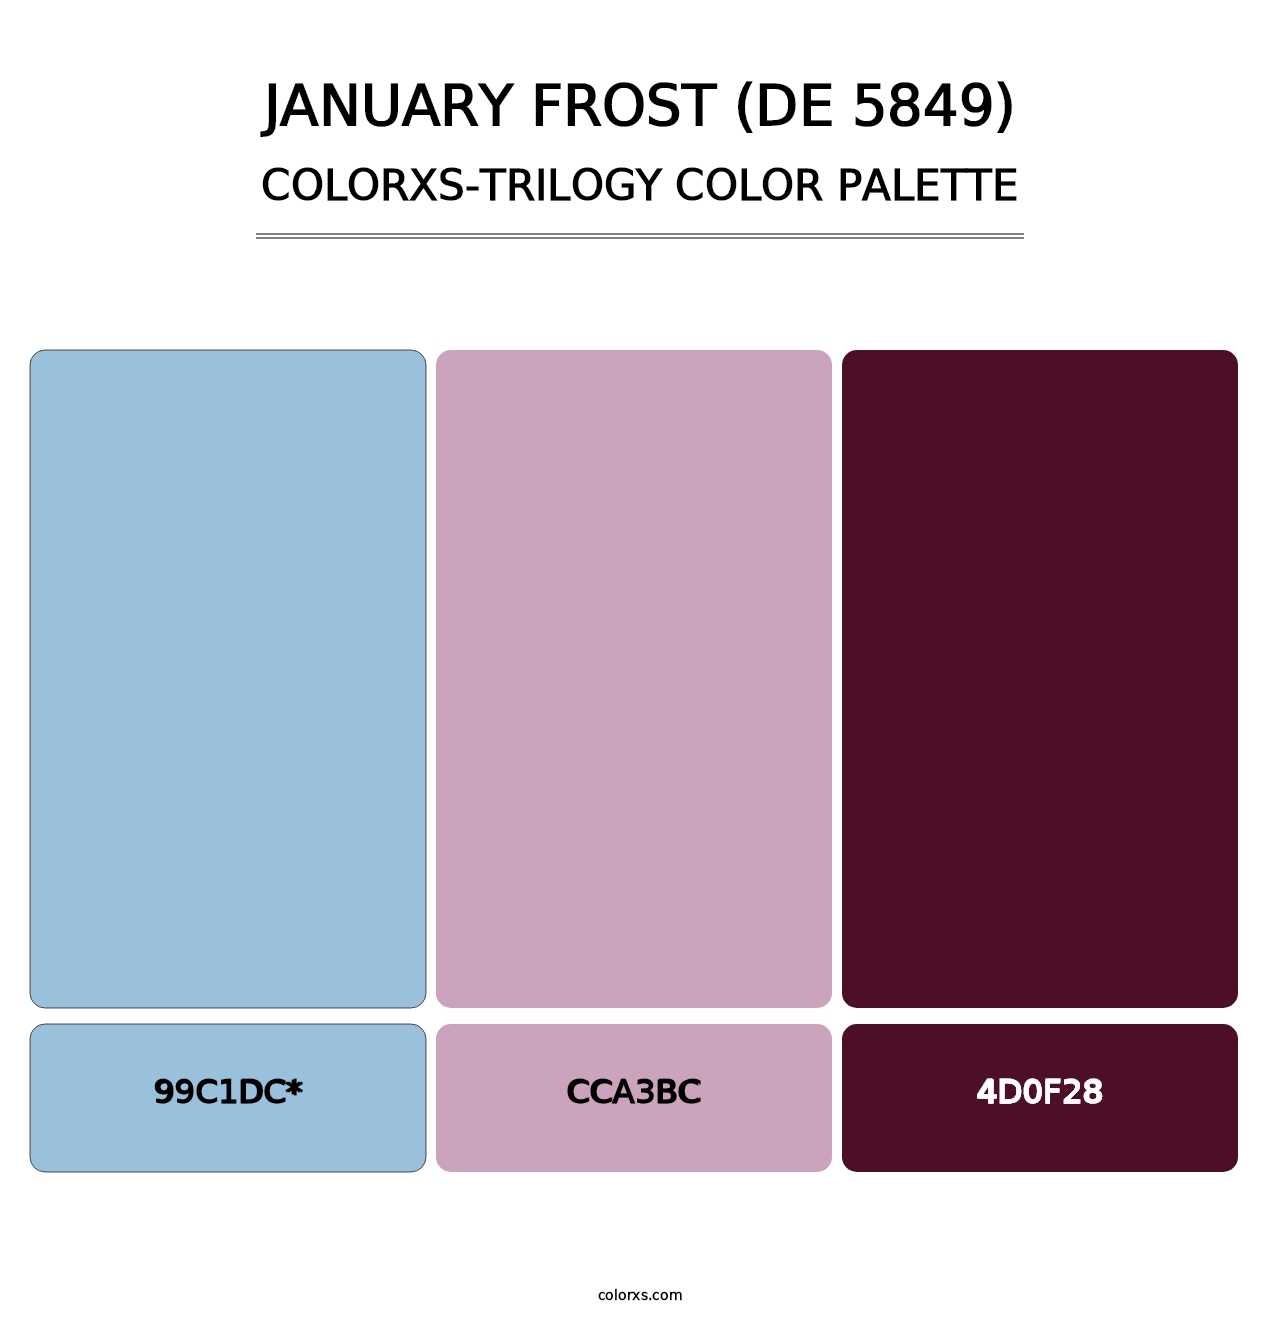 January Frost (DE 5849) - Colorxs Trilogy Palette